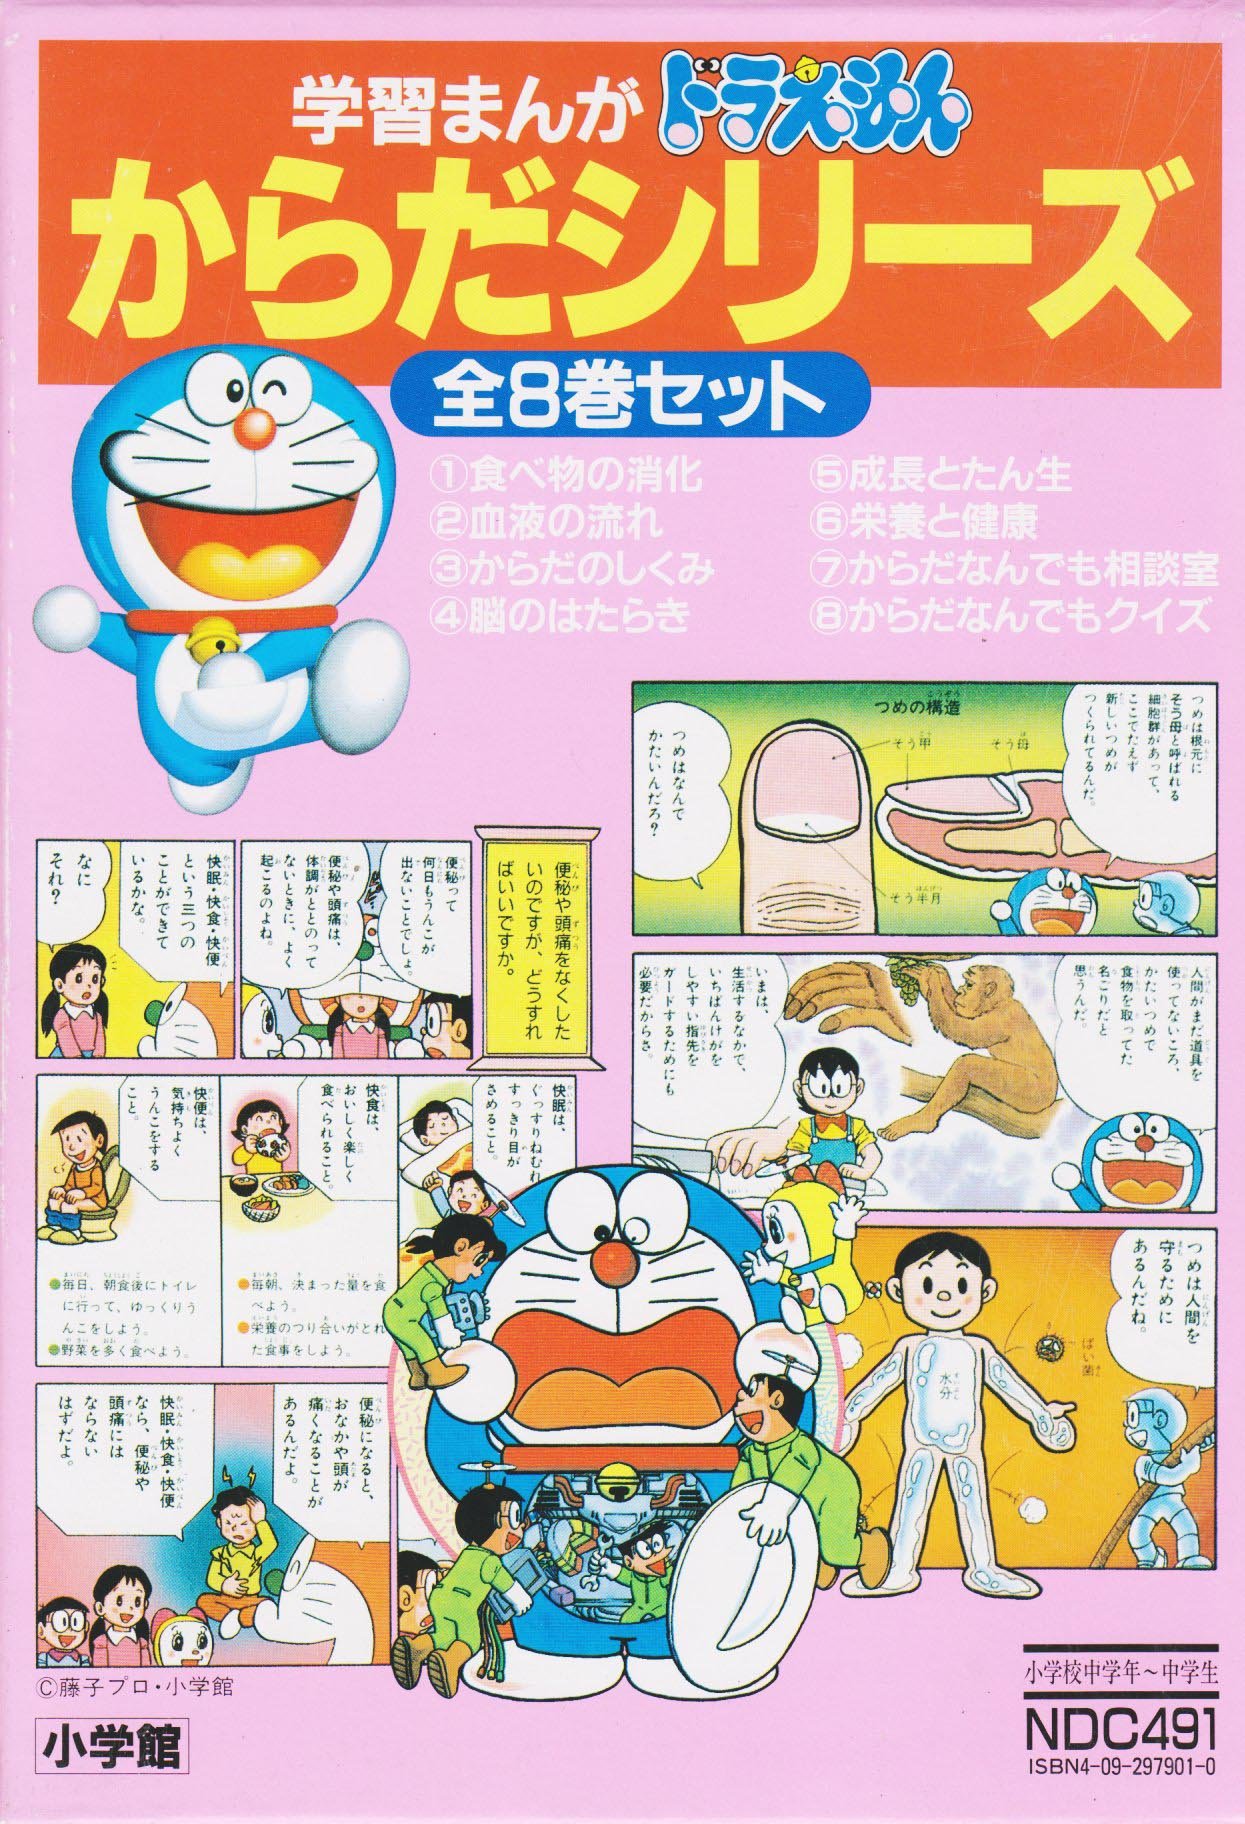 Doraemon's Body Series